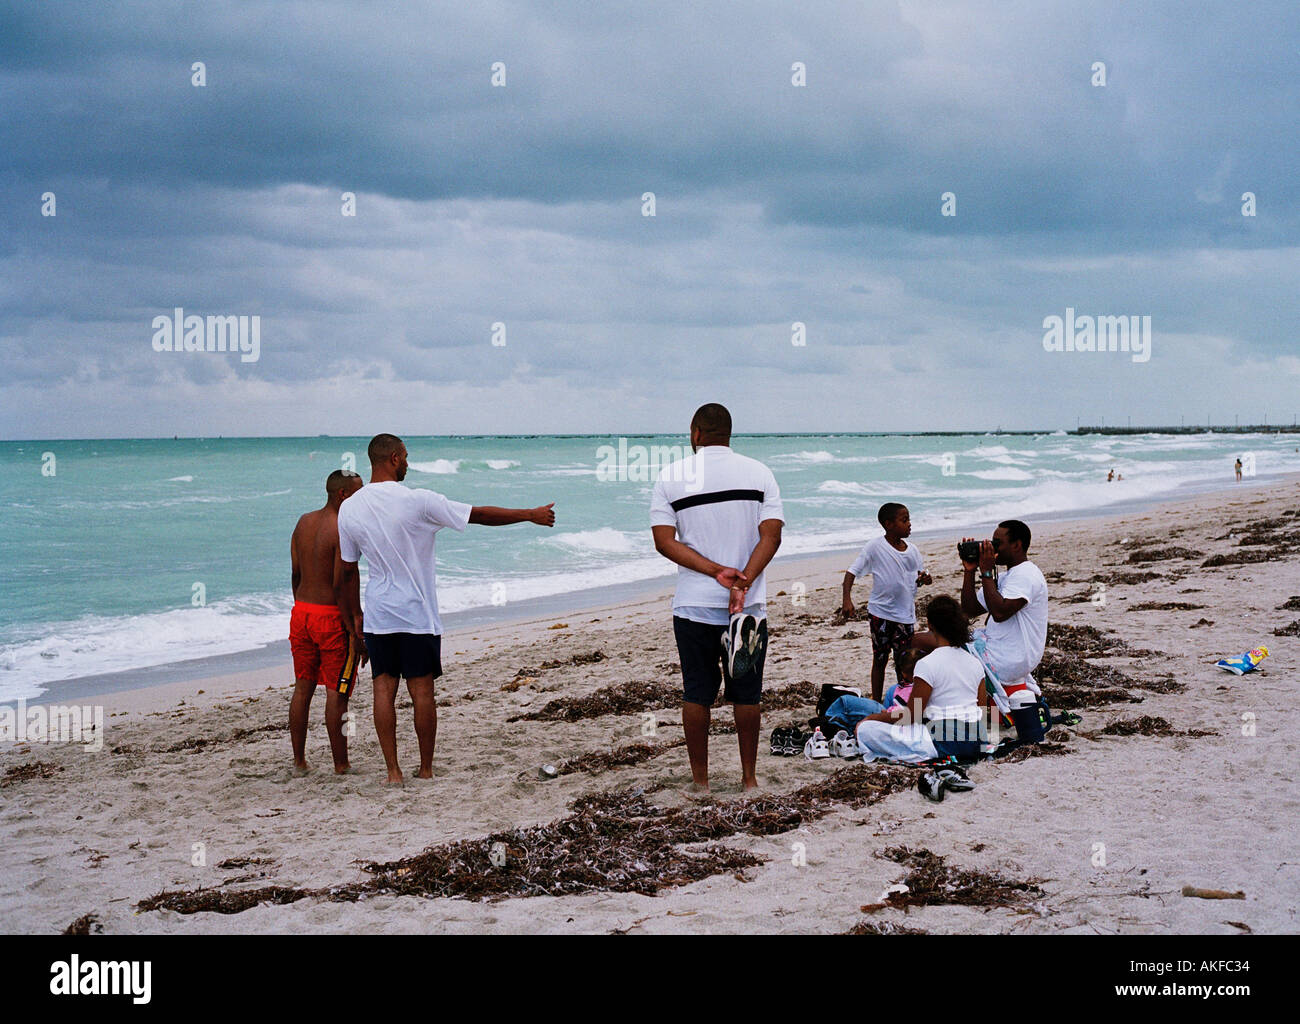 Group on beach Miami Florida USA Stock Photo